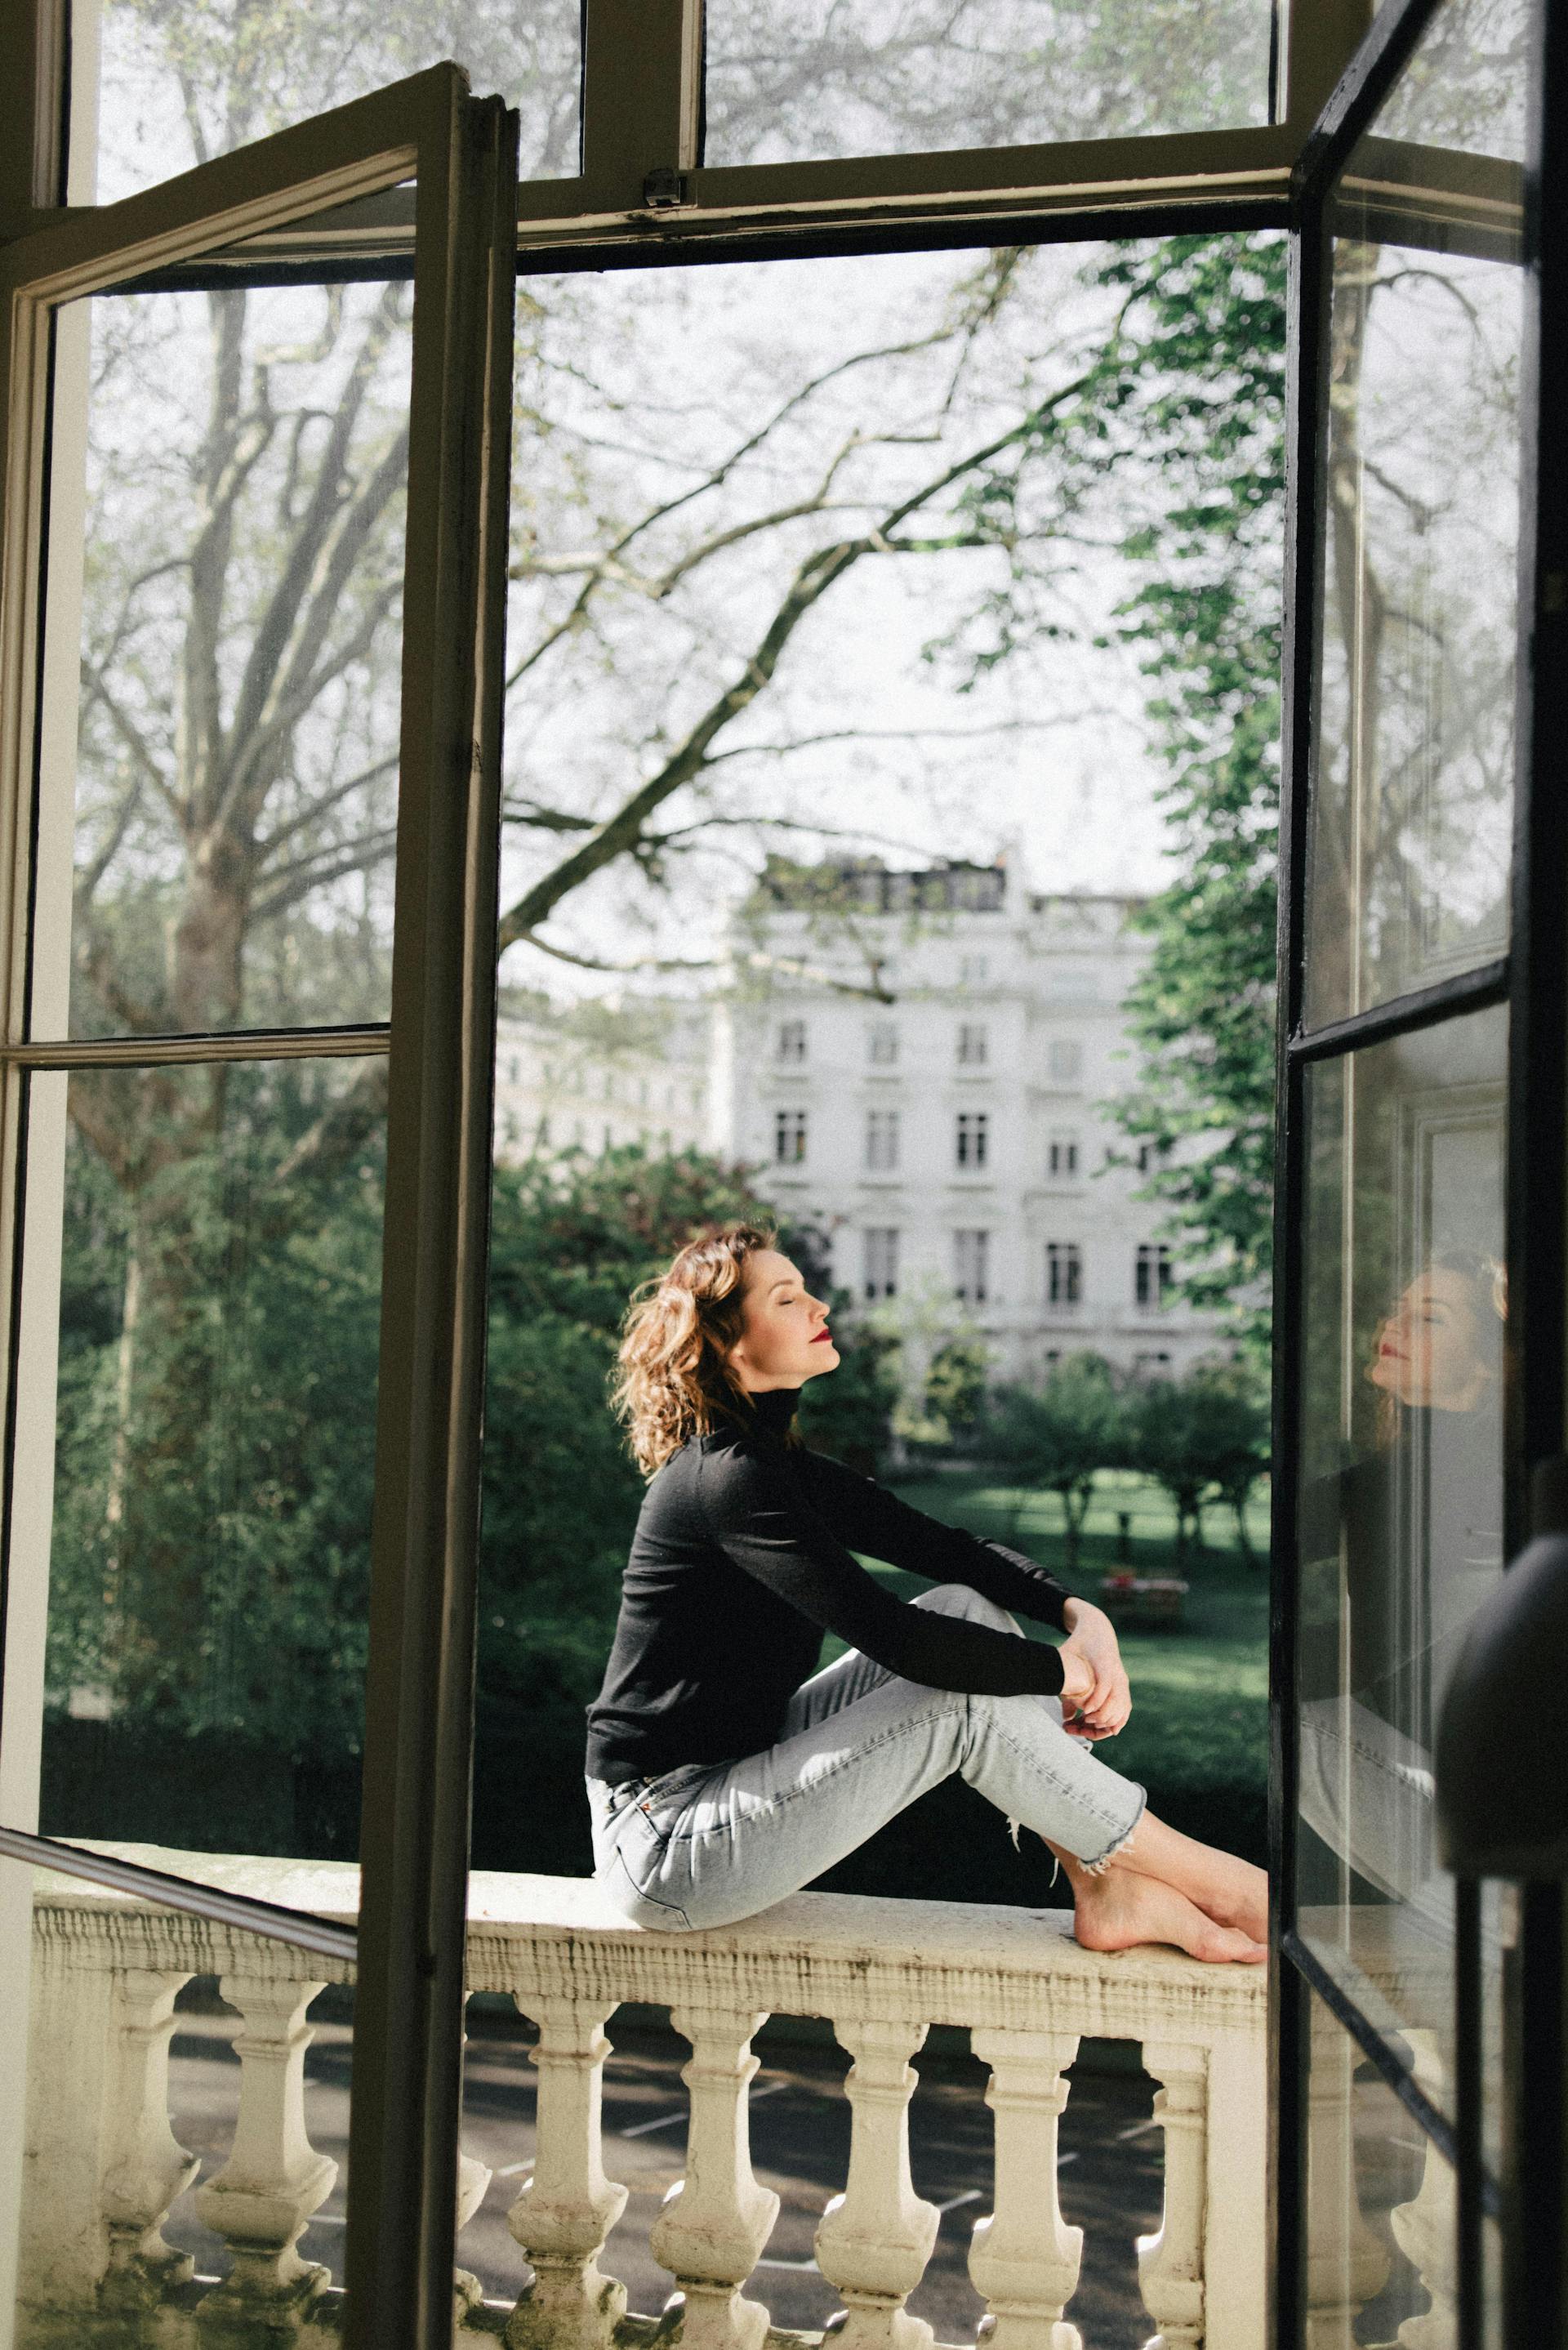 Eine Frau, die auf einem Balkon sitzt | Quelle: Pexels